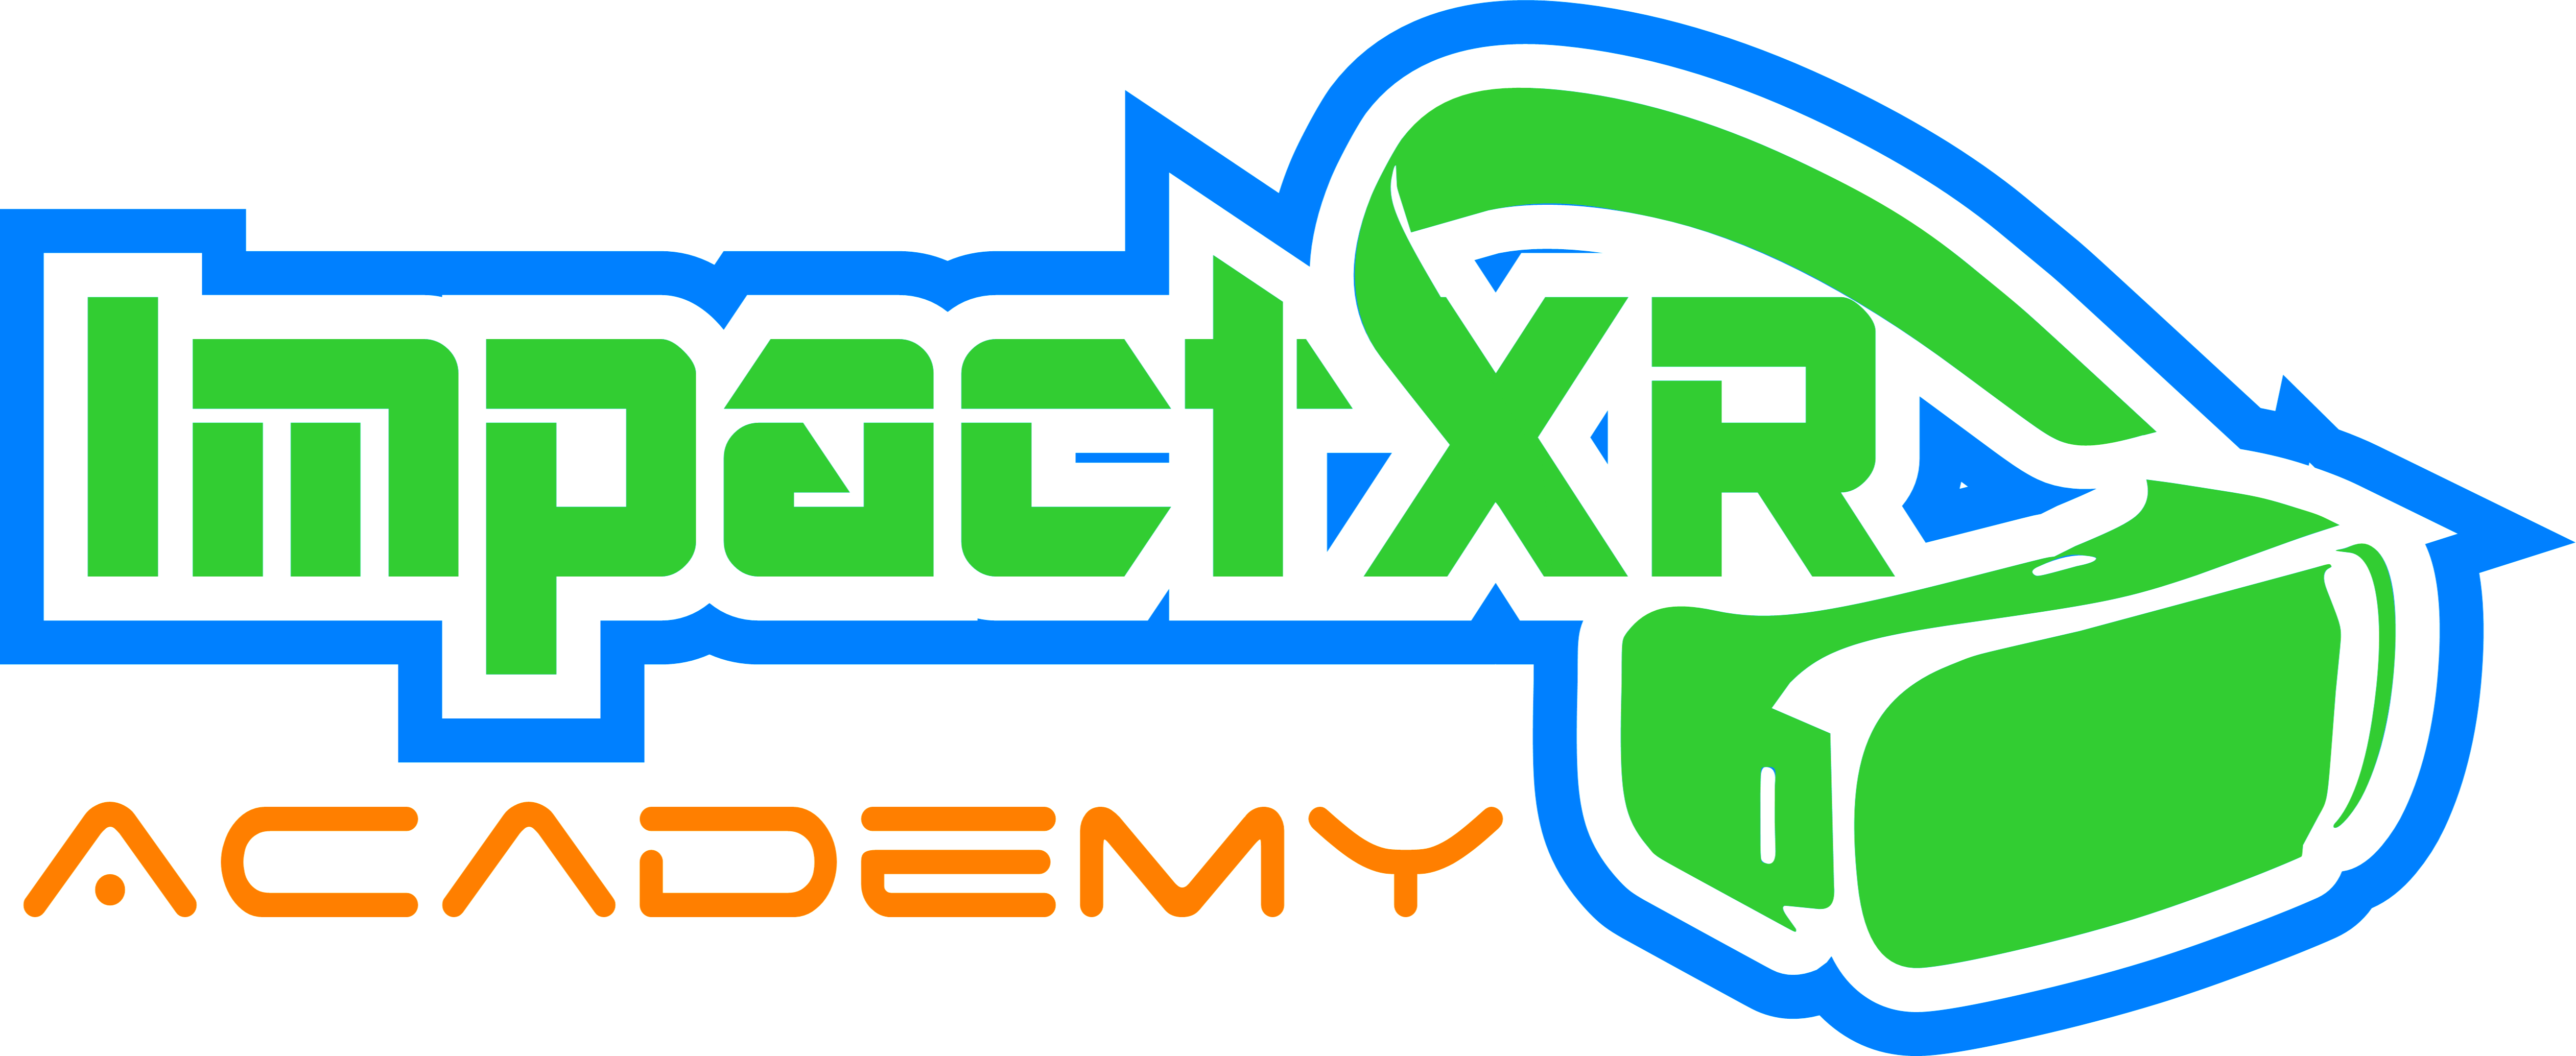 ImpactXR Academy logo